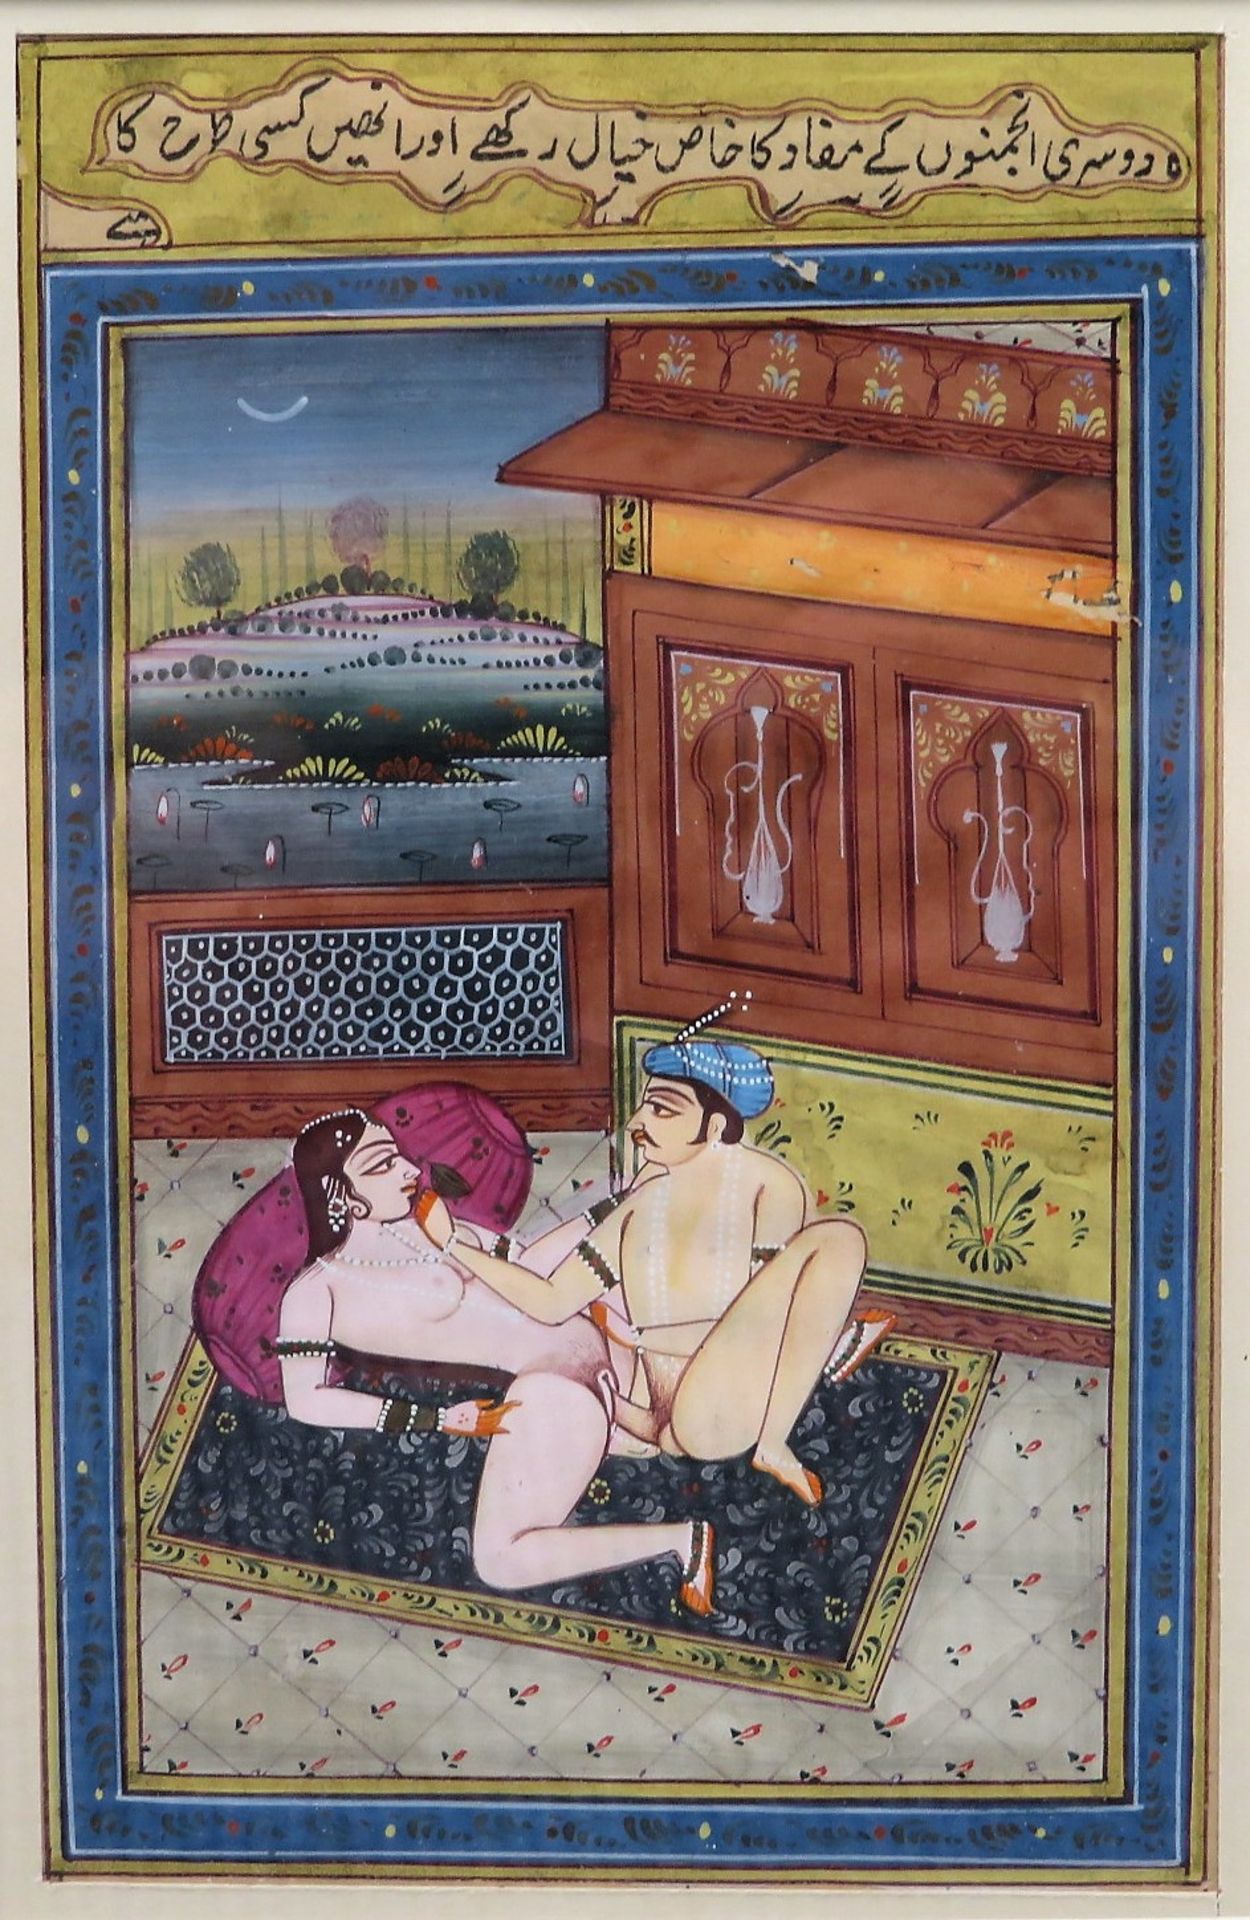 2 erotische Miniaturen, Indien, 19. Jahrhundert, farbige Buchmalerei, 15 x 10 cm, R. [27,5 x 22,5 c